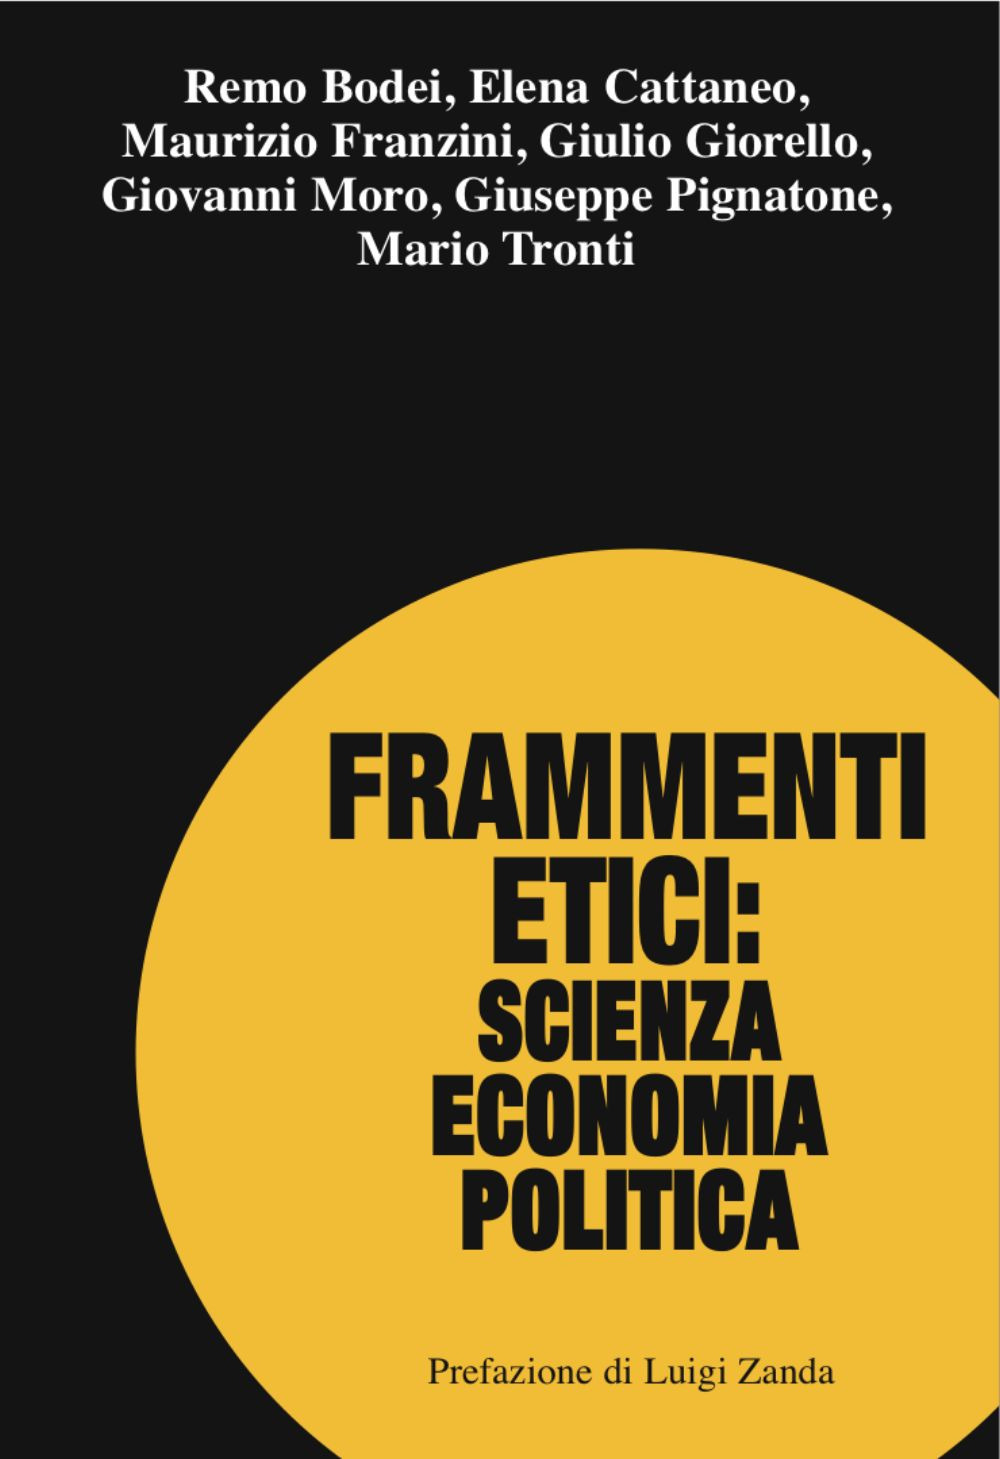 Image of Frammenti etici: scienza economia politica